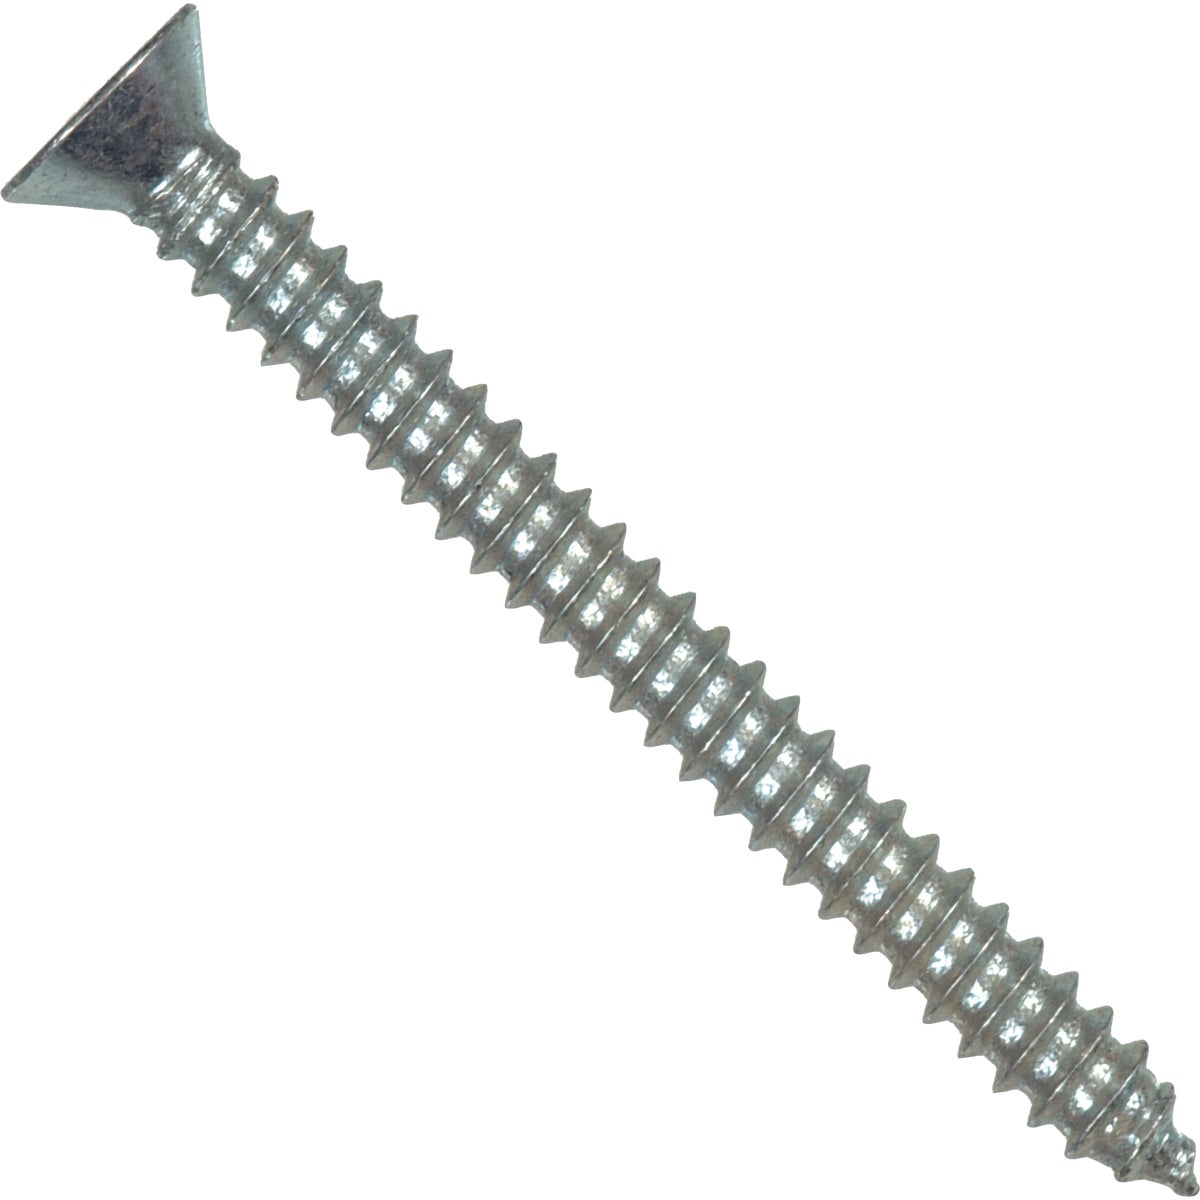 Item 716472, Flat head Phillips sheet metal screw.